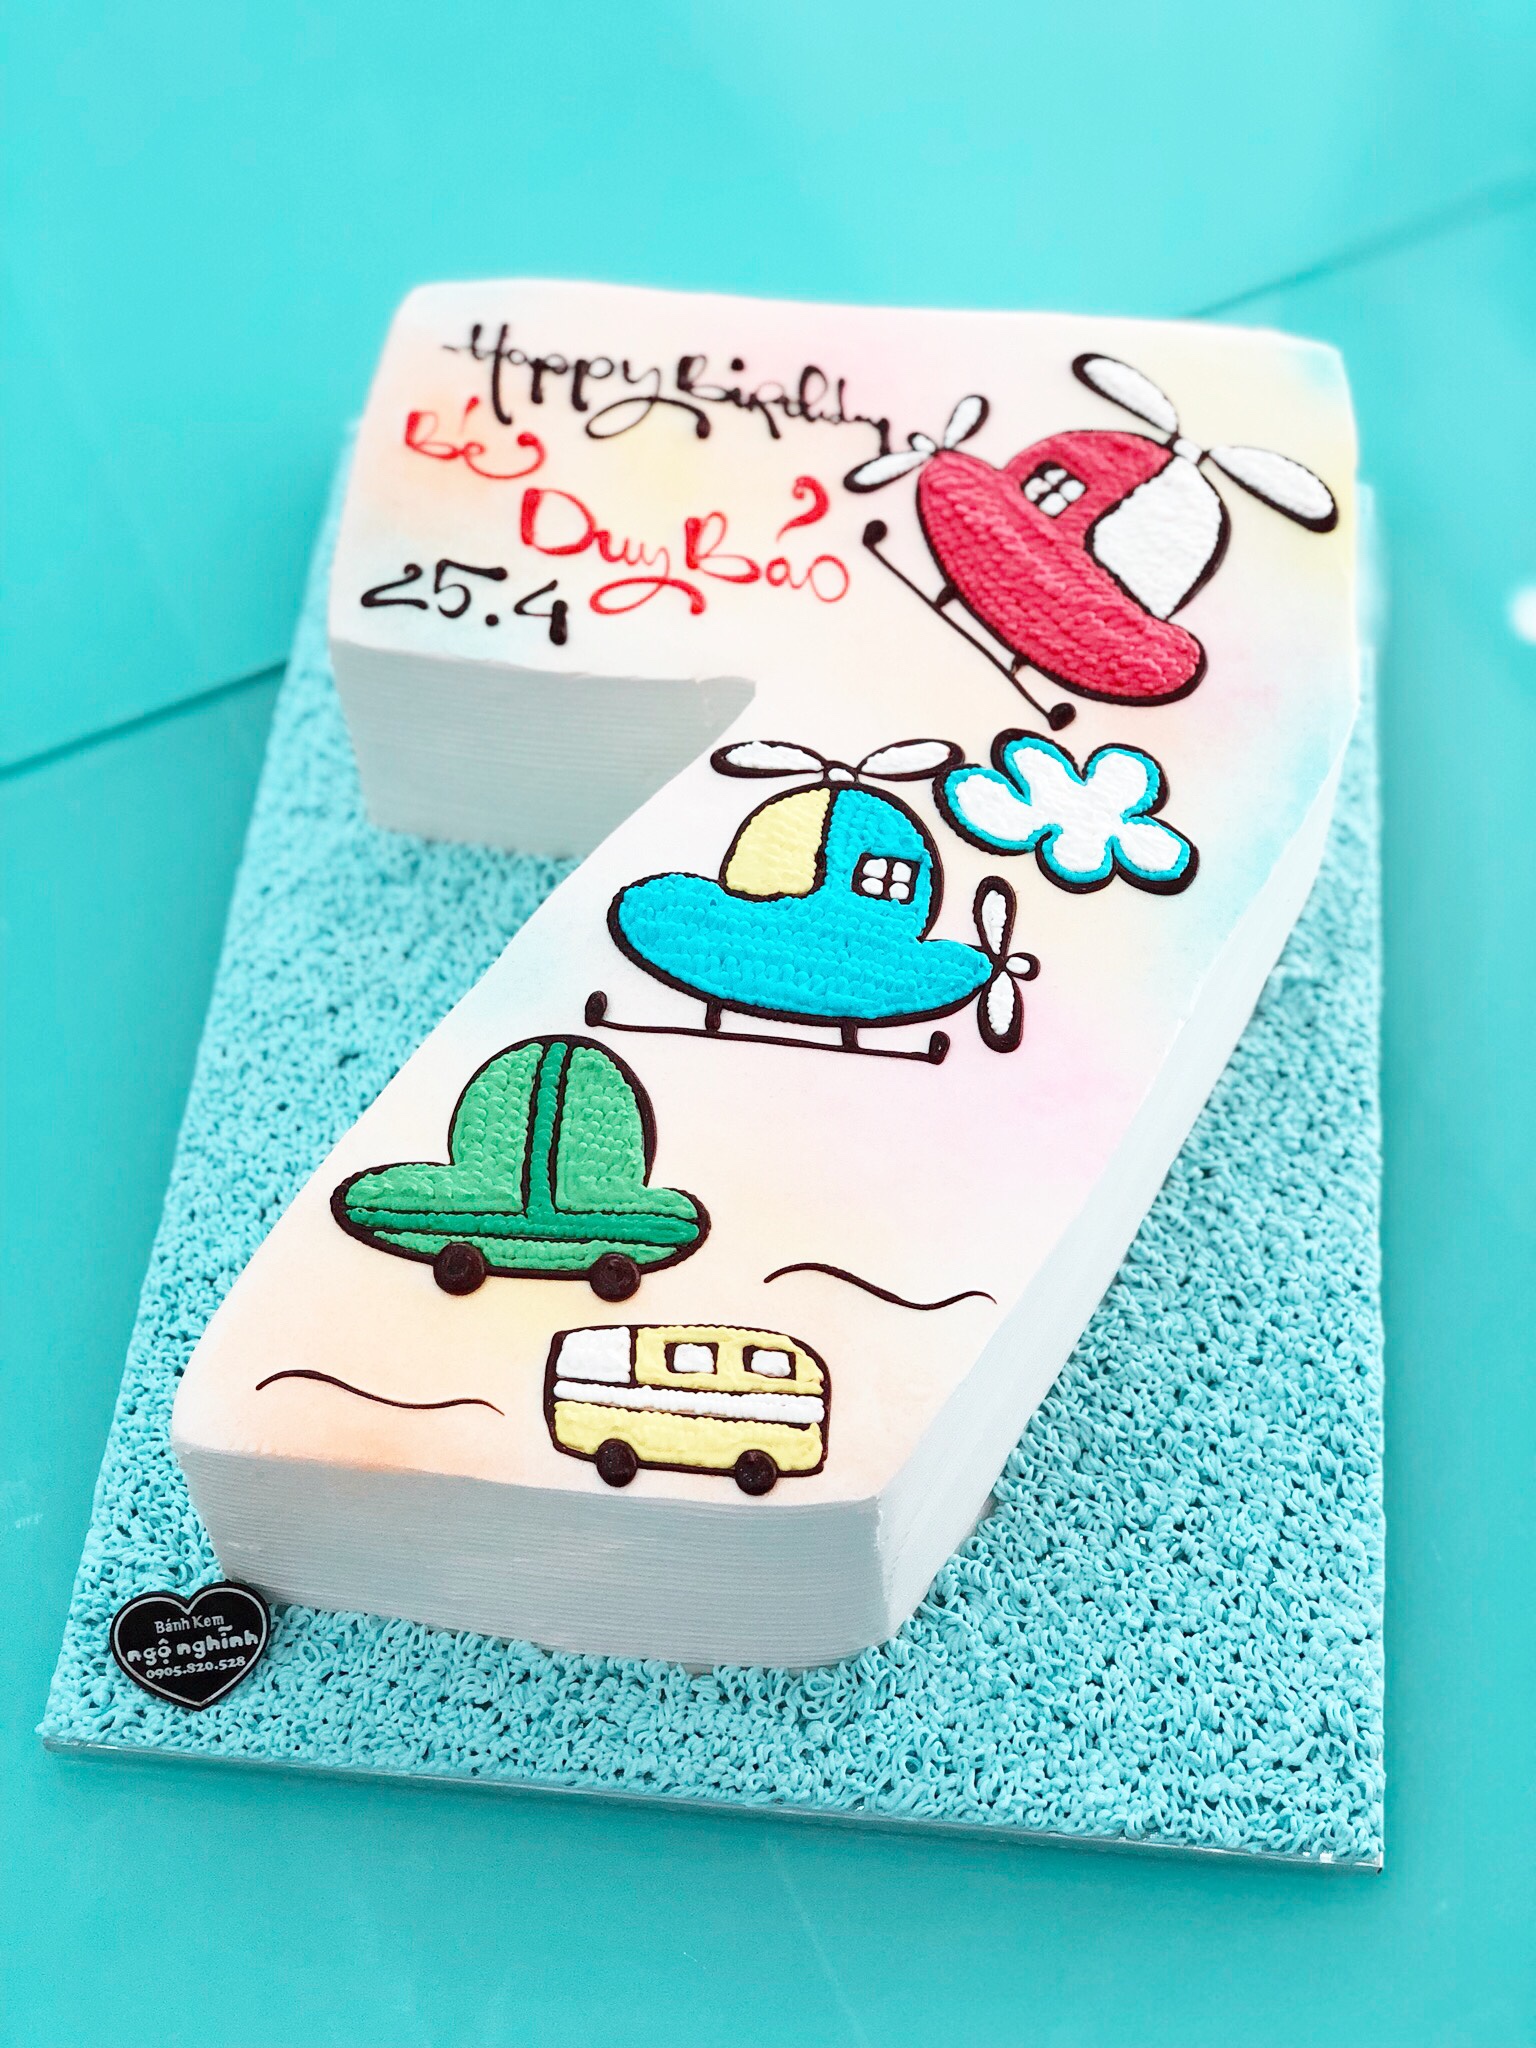 Nếu bạn đang tìm kiếm ý tưởng cho bánh kem sinh nhật của mình, hãy đến với chúng tôi để cùng thưởng thức những chiếc bánh kem sinh nhật 3D độc đáo và đẹp mắt. Bạn sẽ không chỉ thưởng thức được hương vị tuyệt hảo mà còn tận hưởng cảm giác mới lạ của những bánh kem tuyệt đẹp này.